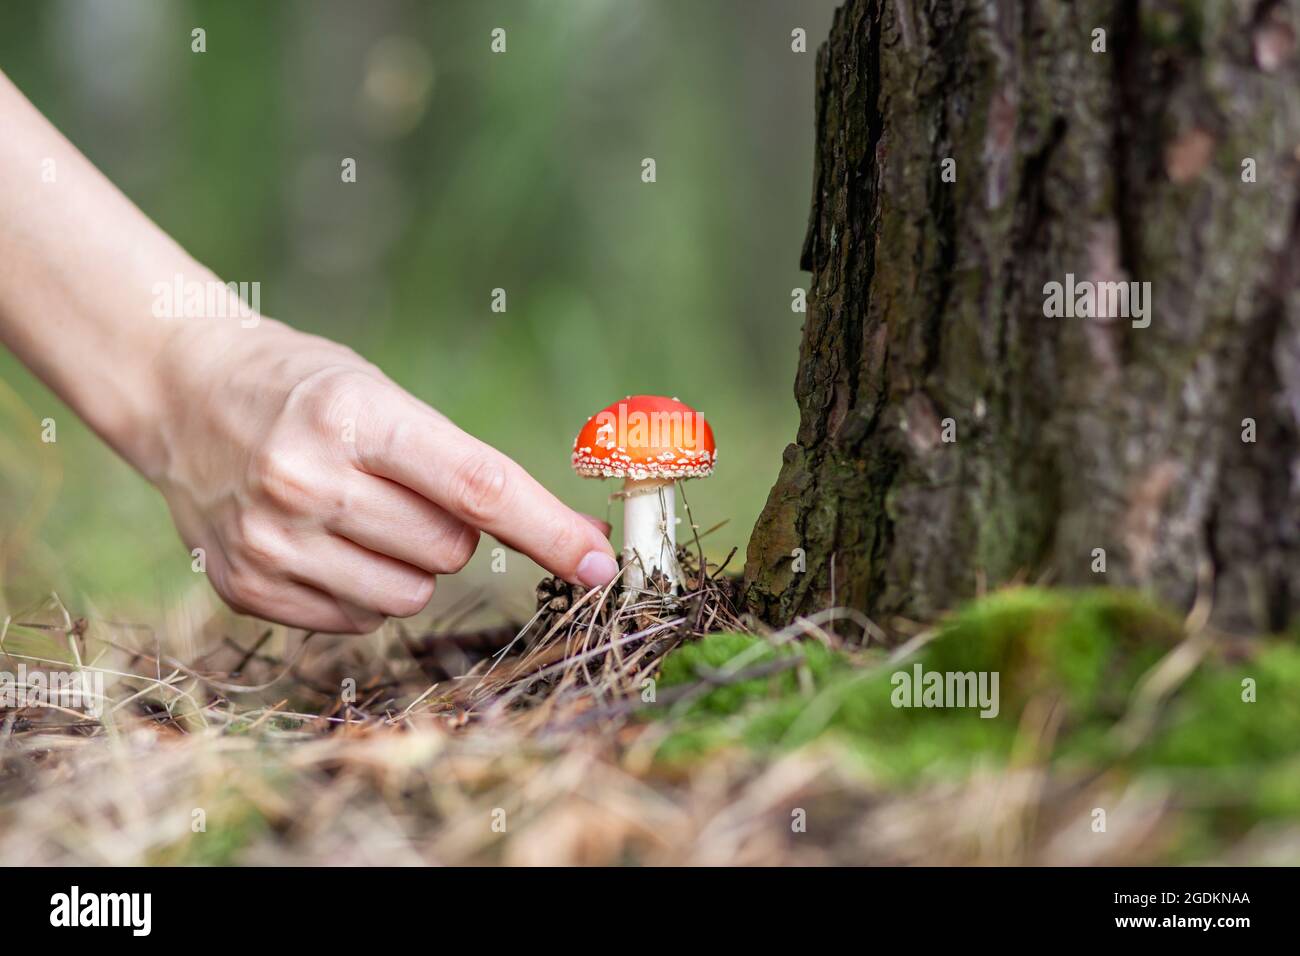 Eine Frau streckt sich mit der Hand aus, um eine Pilzfliege zu pflücken. Ein ungenießbarer Pilz ist eine rote Fliege-Agarie in der Nähe eines Baumes. Wald giftiger Pilz rot f Stockfoto